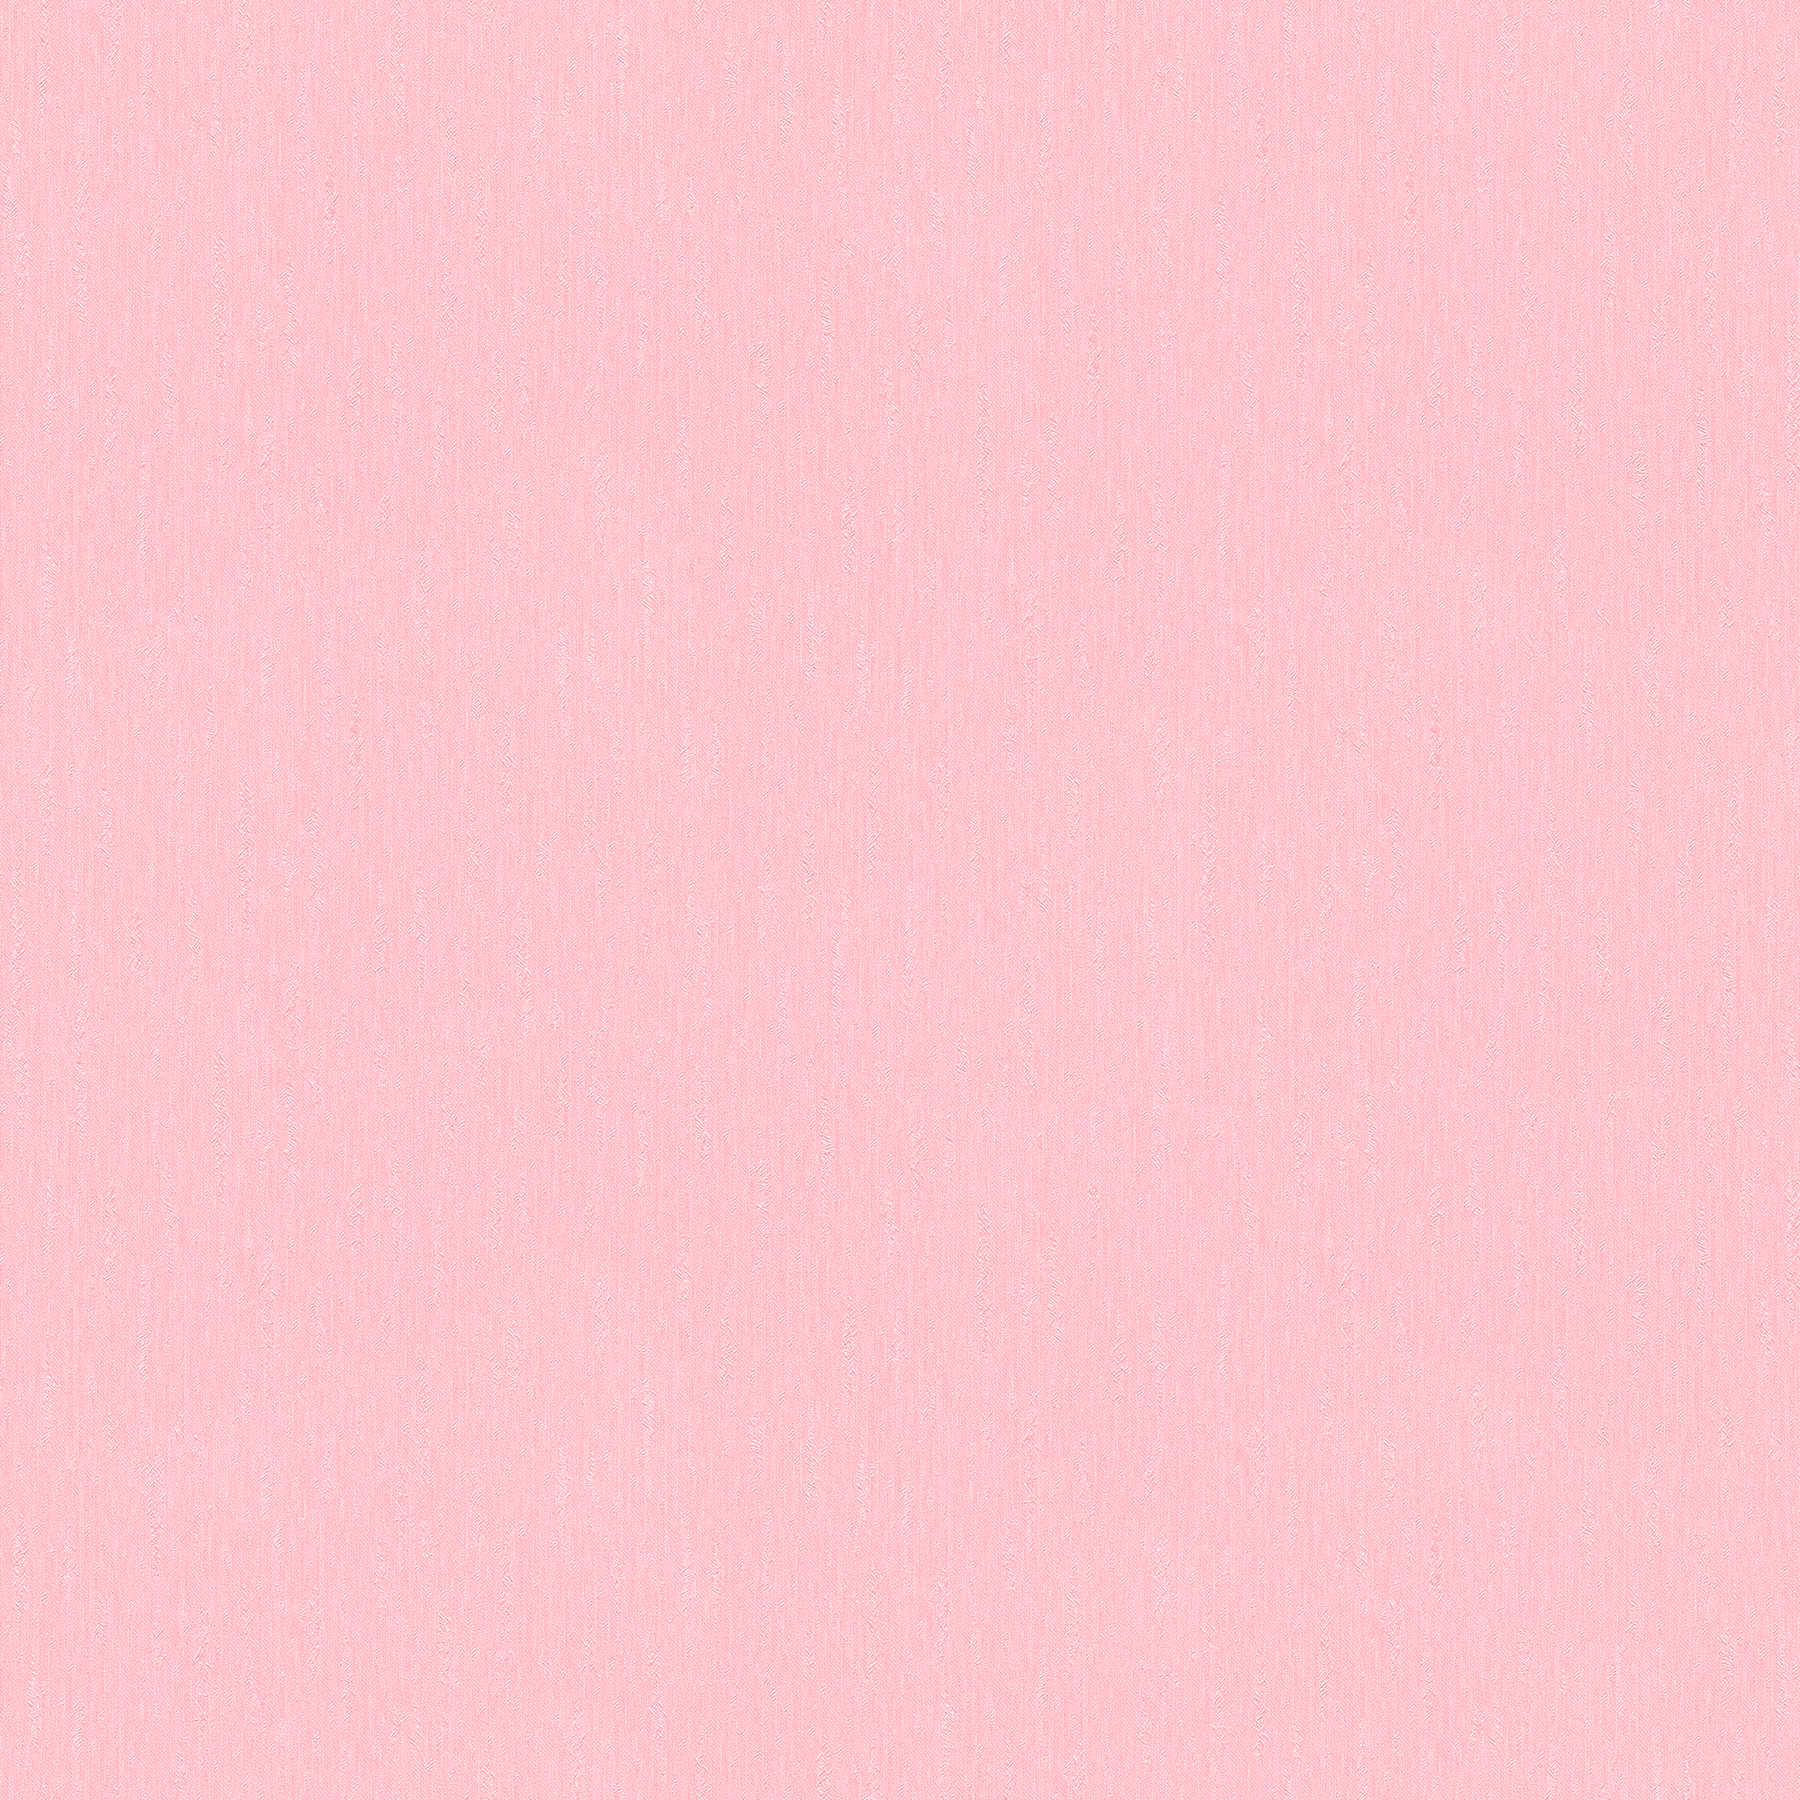 Rosa Vliestapete einfarbig helles Pink mit Strukturoberfläche
